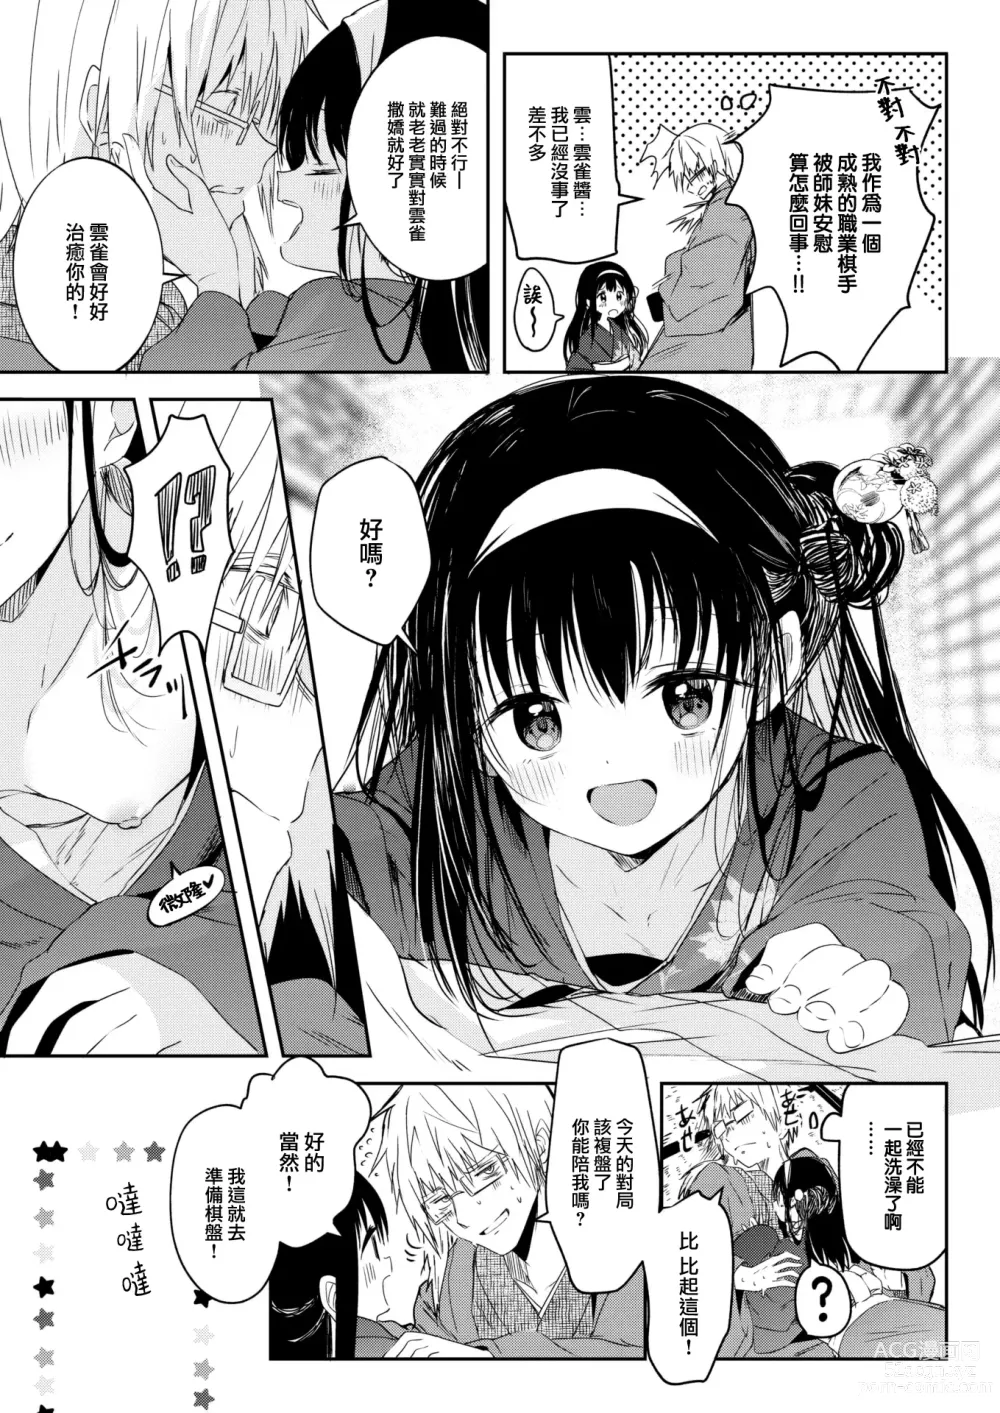 Page 4 of manga Tokaku Ukiyowa Mamanaranu.